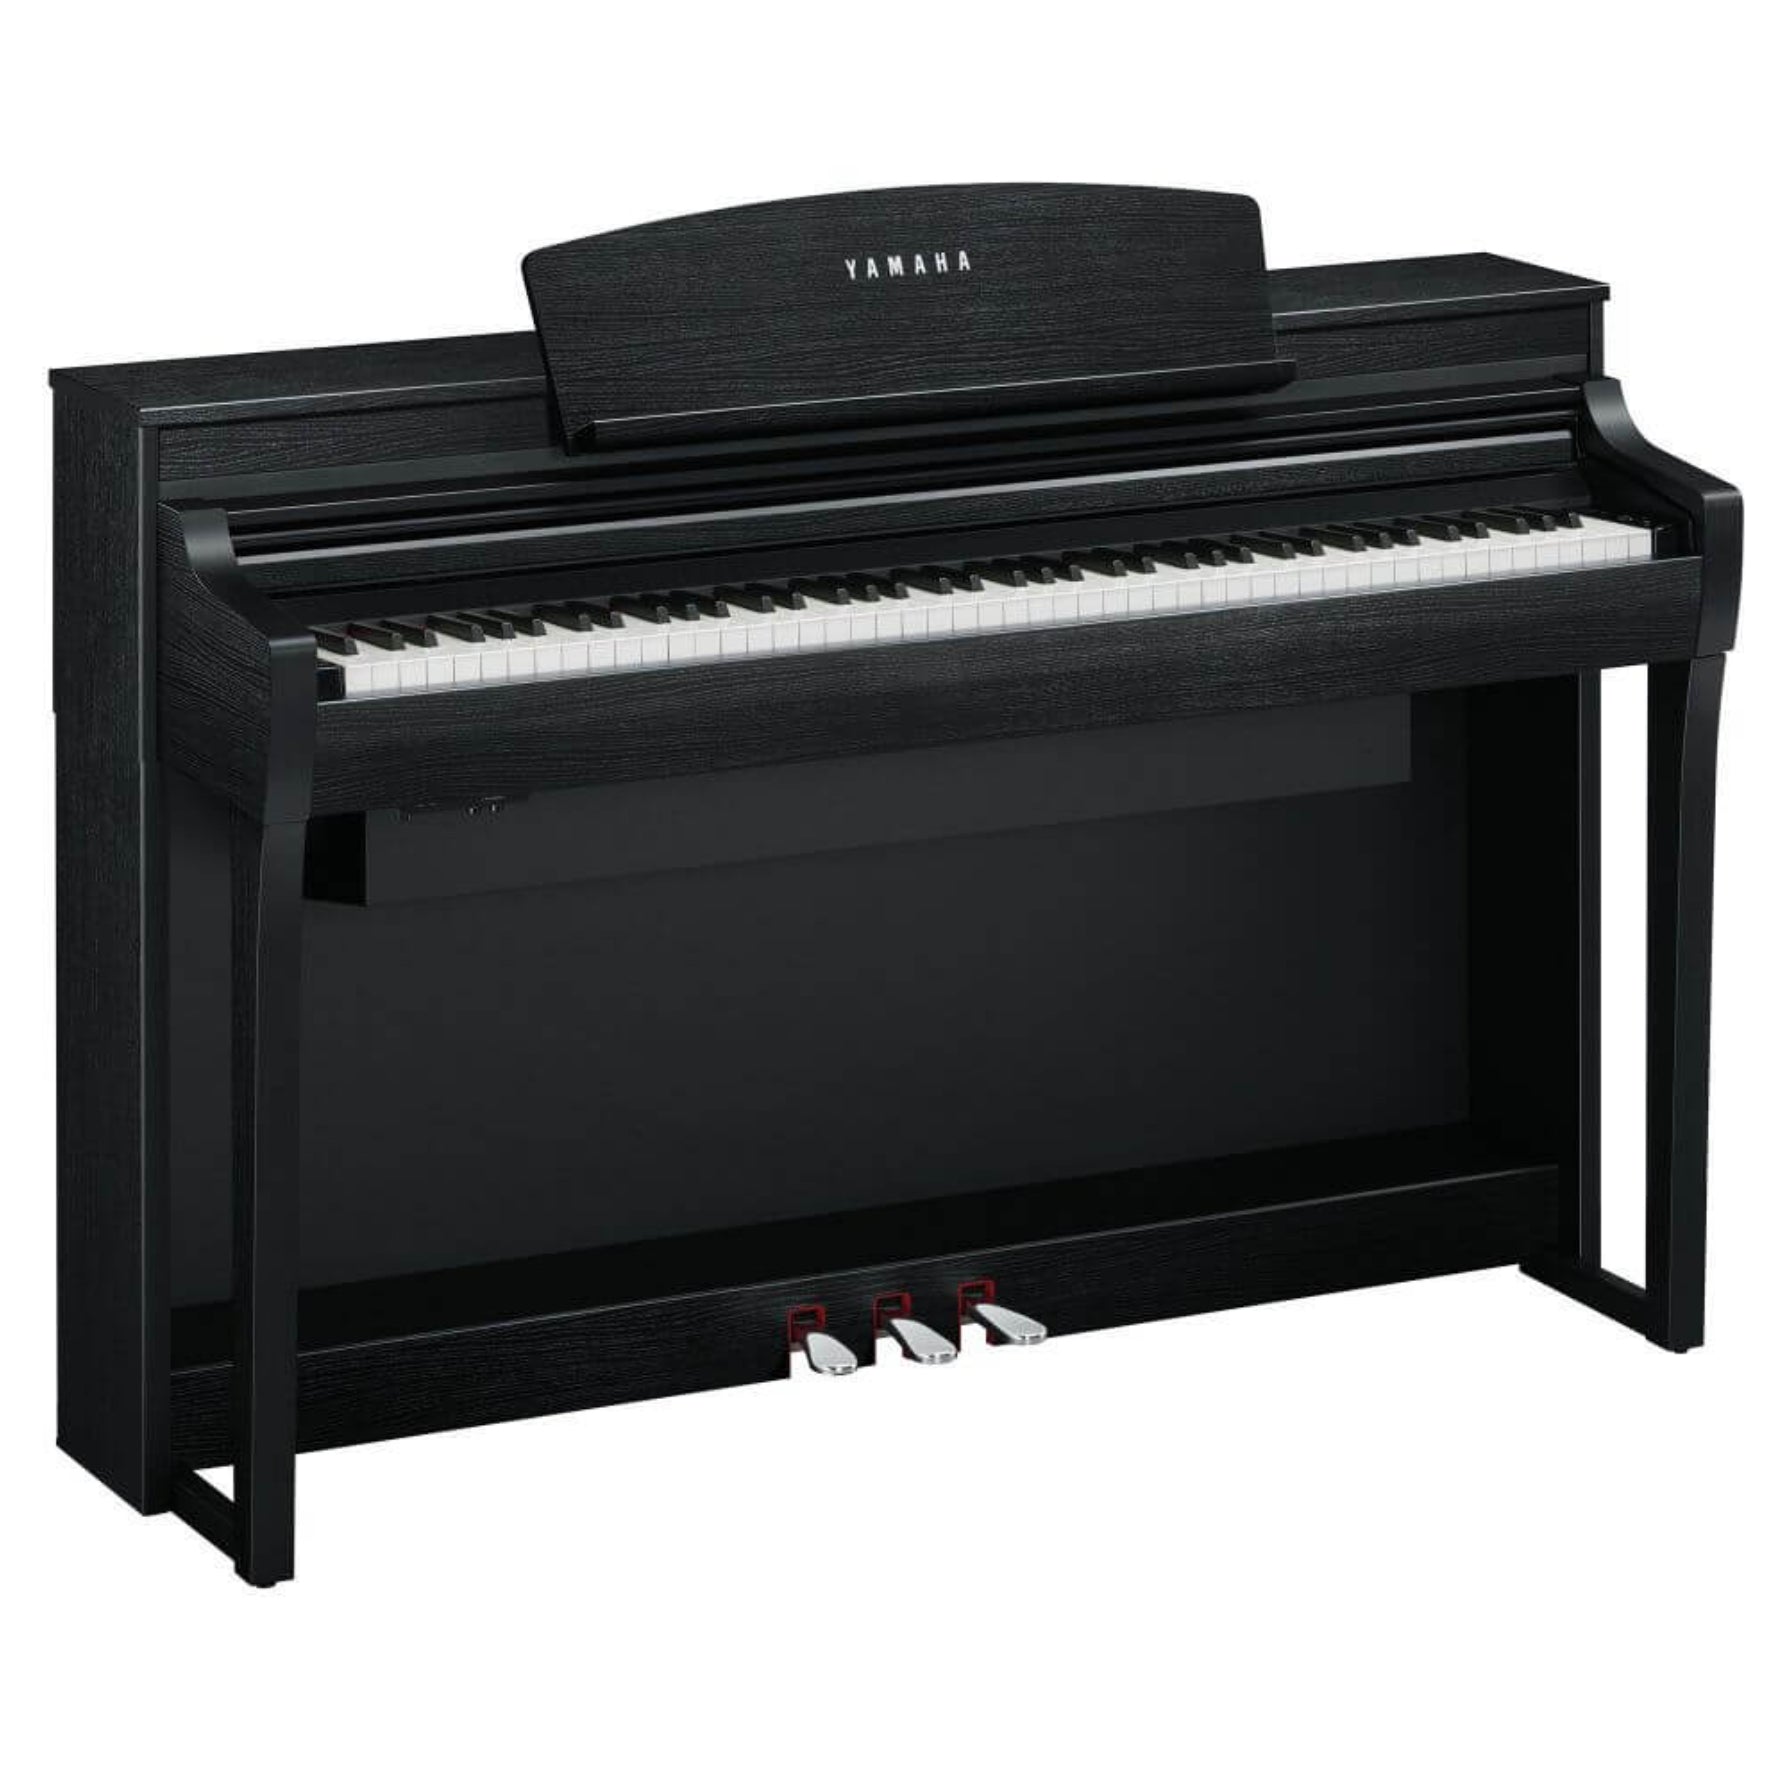 Yamaha Clavinova CSP-275 Digital Piano with Bench